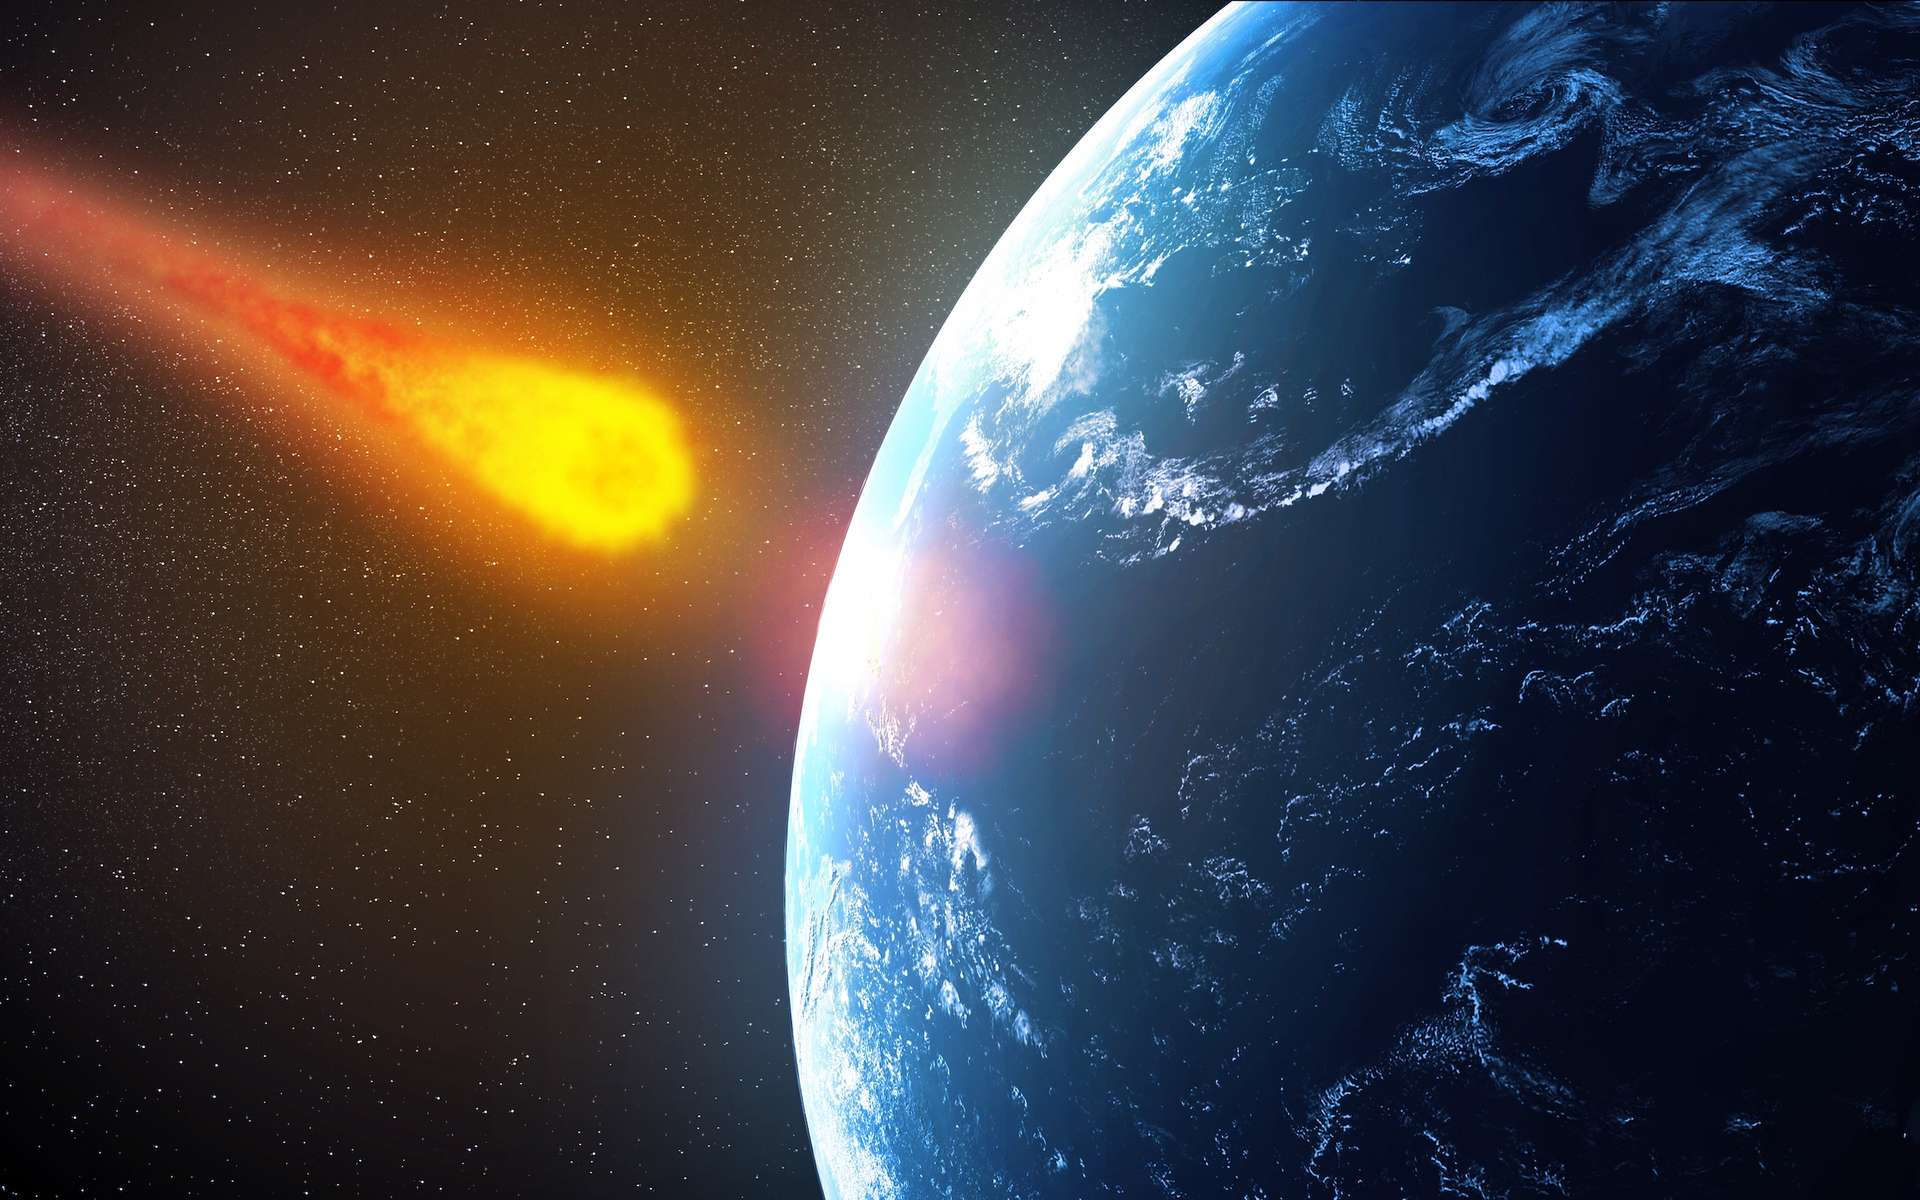 Faut-il s'inquiéter de cet astéroïde qui pourrait s'écraser sur la Terre en 2046 ?